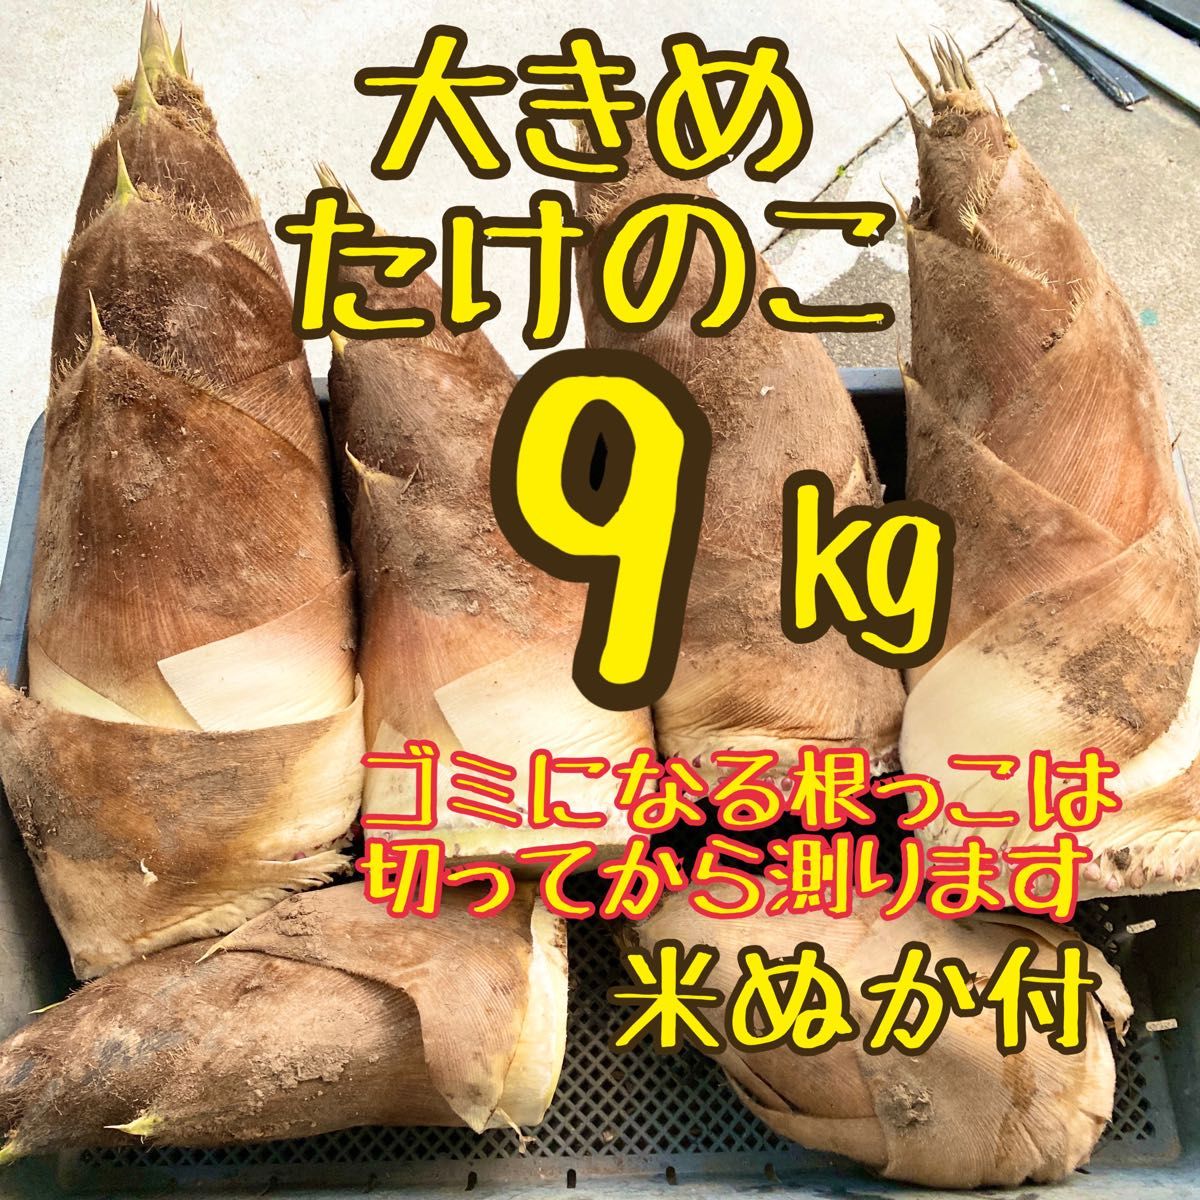 たけのこ 5キロ 筍 三重県産 糠つき - 野菜